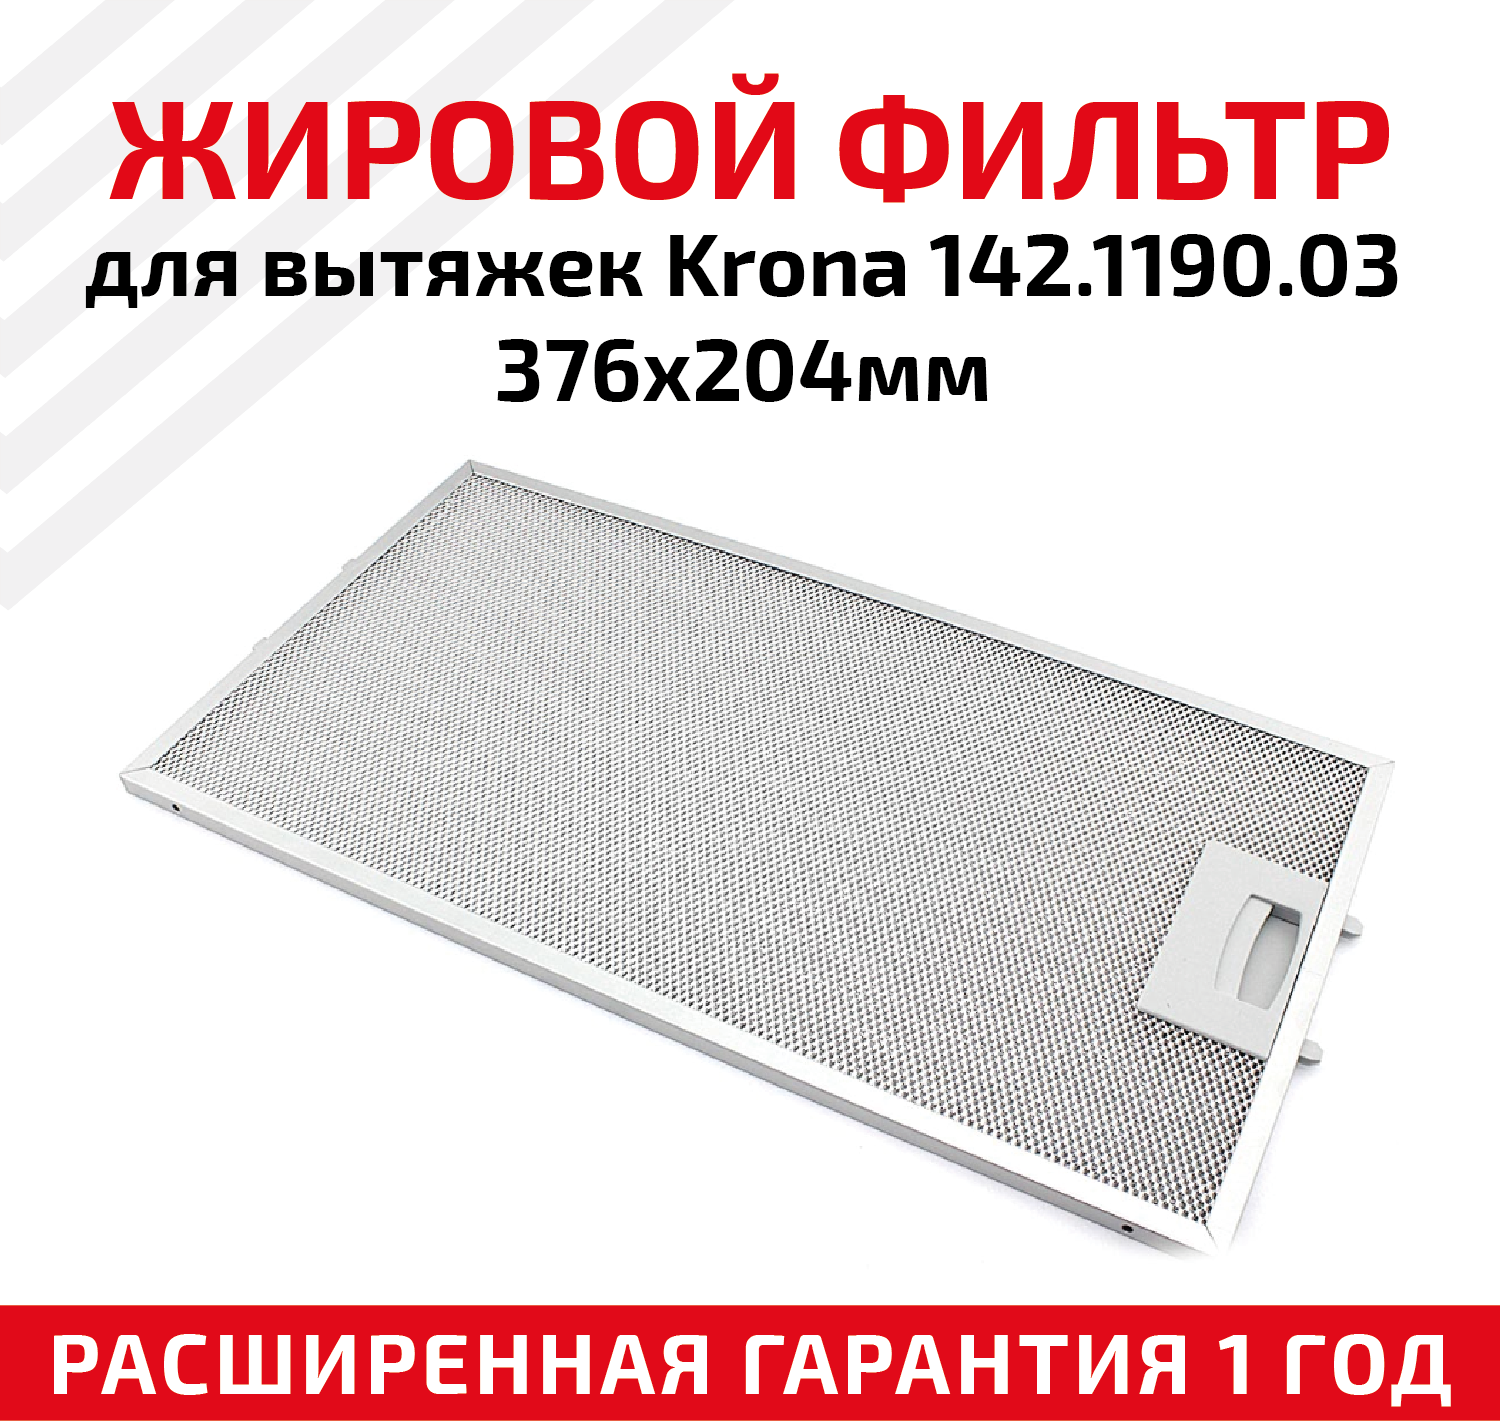 Жировой фильтр (кассета) алюминиевый (металлический) рамочный для вытяжек Krona 142.1190.03 многоразовый 376х204мм